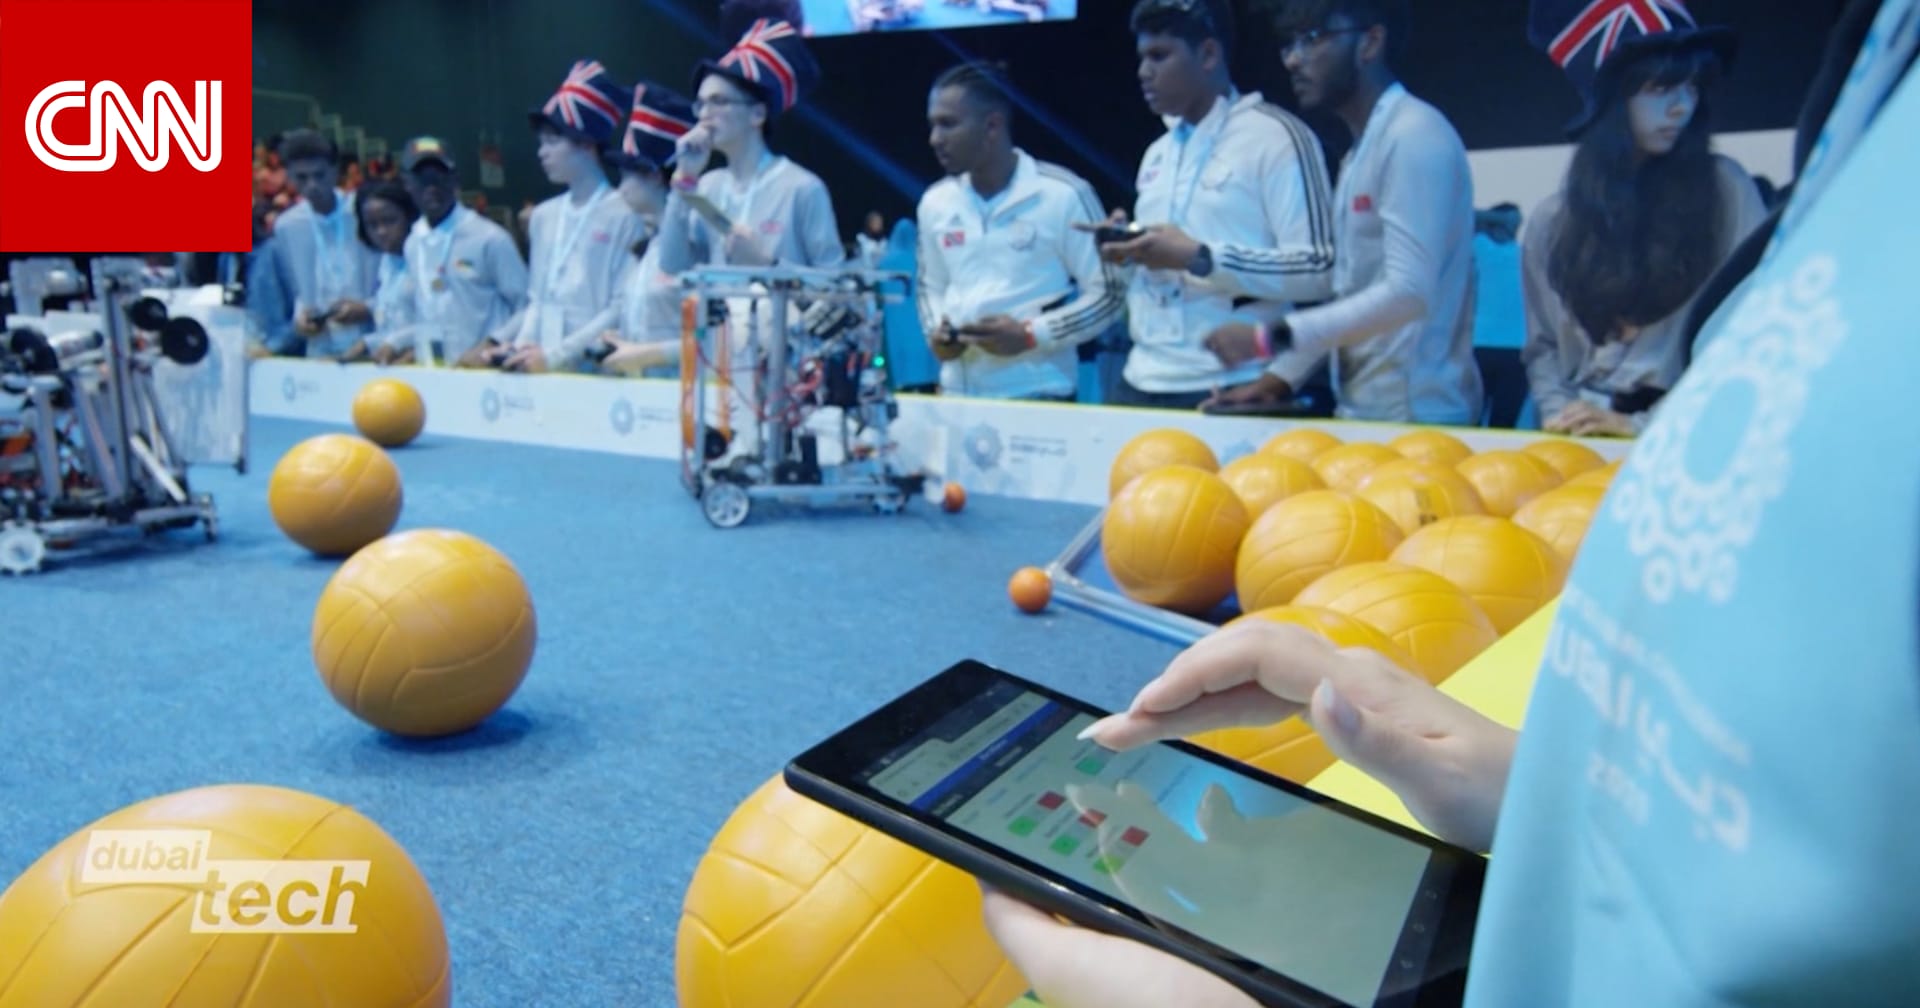 دبي تستضيف أكبر منافسة للروبوتات في العالم - CNN Arabic